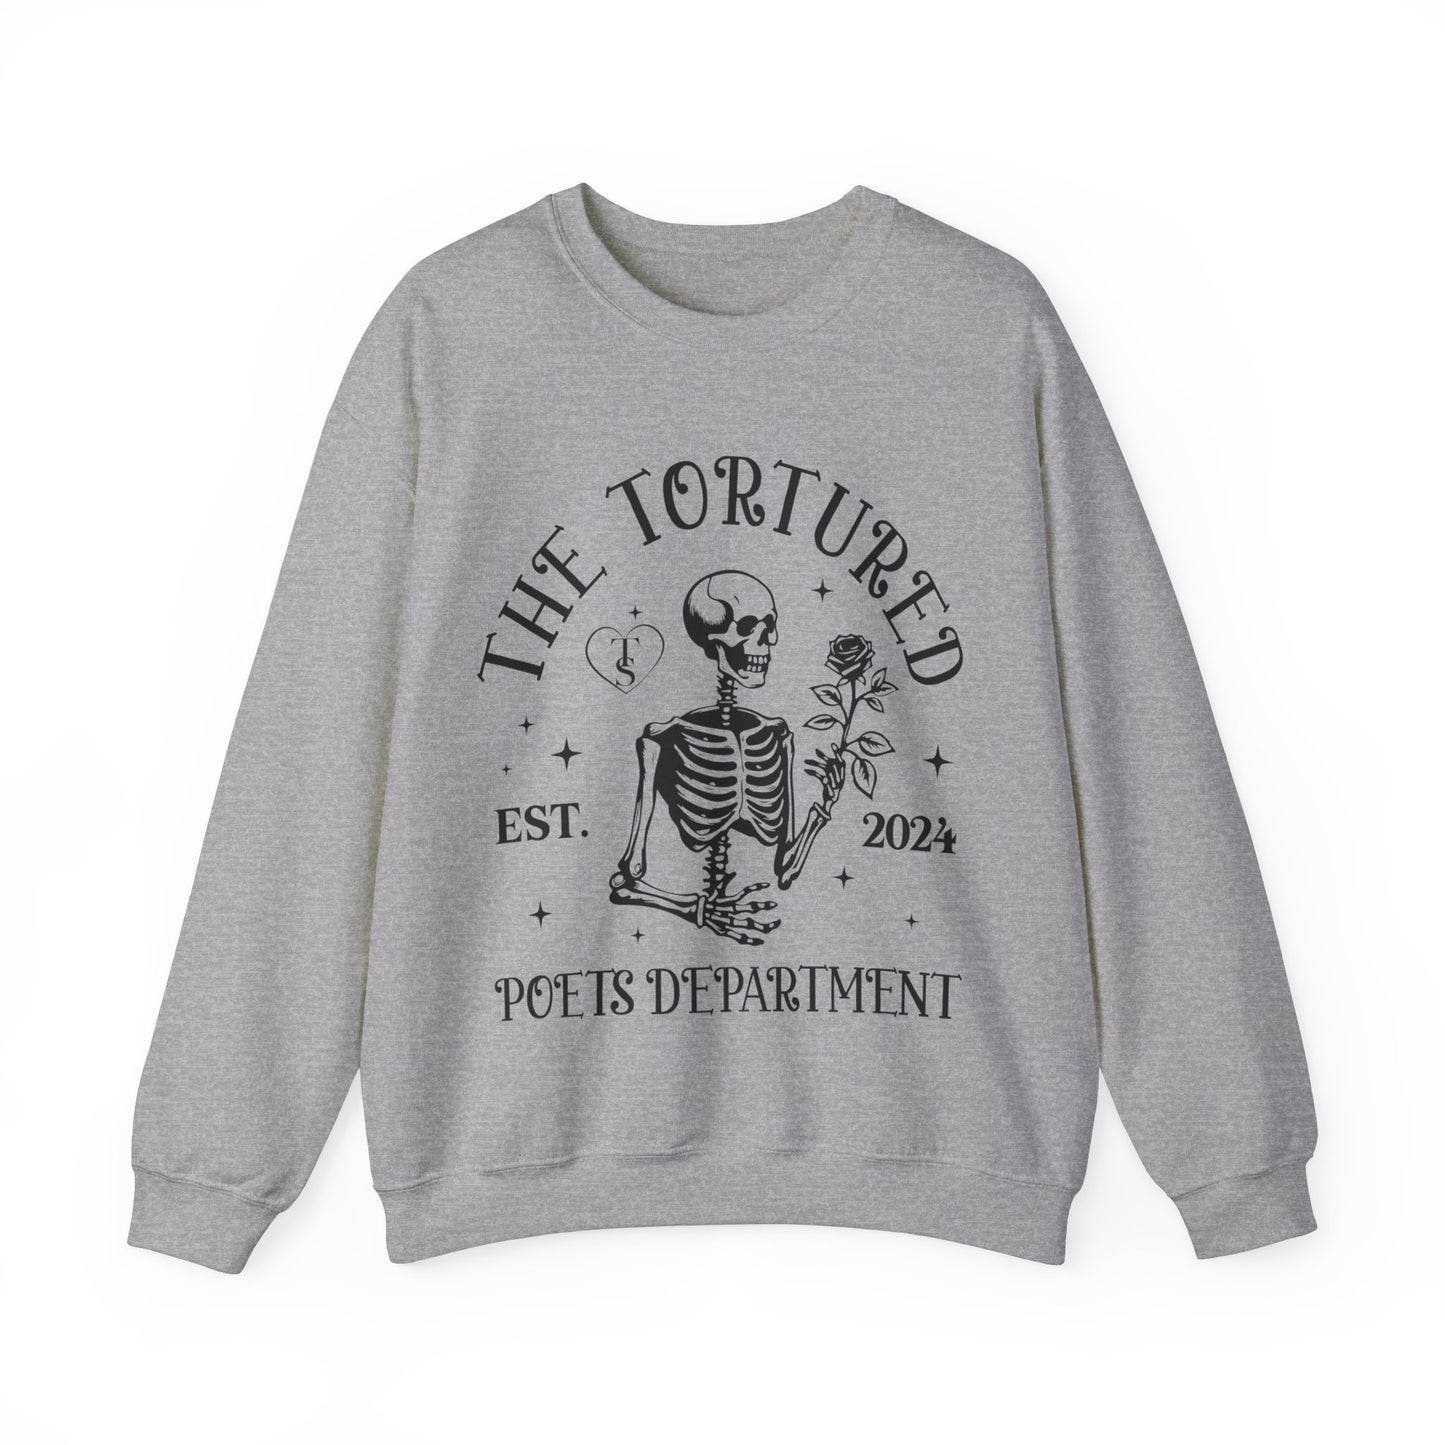 The Tortured Poet - Crewneck Sweatshirt